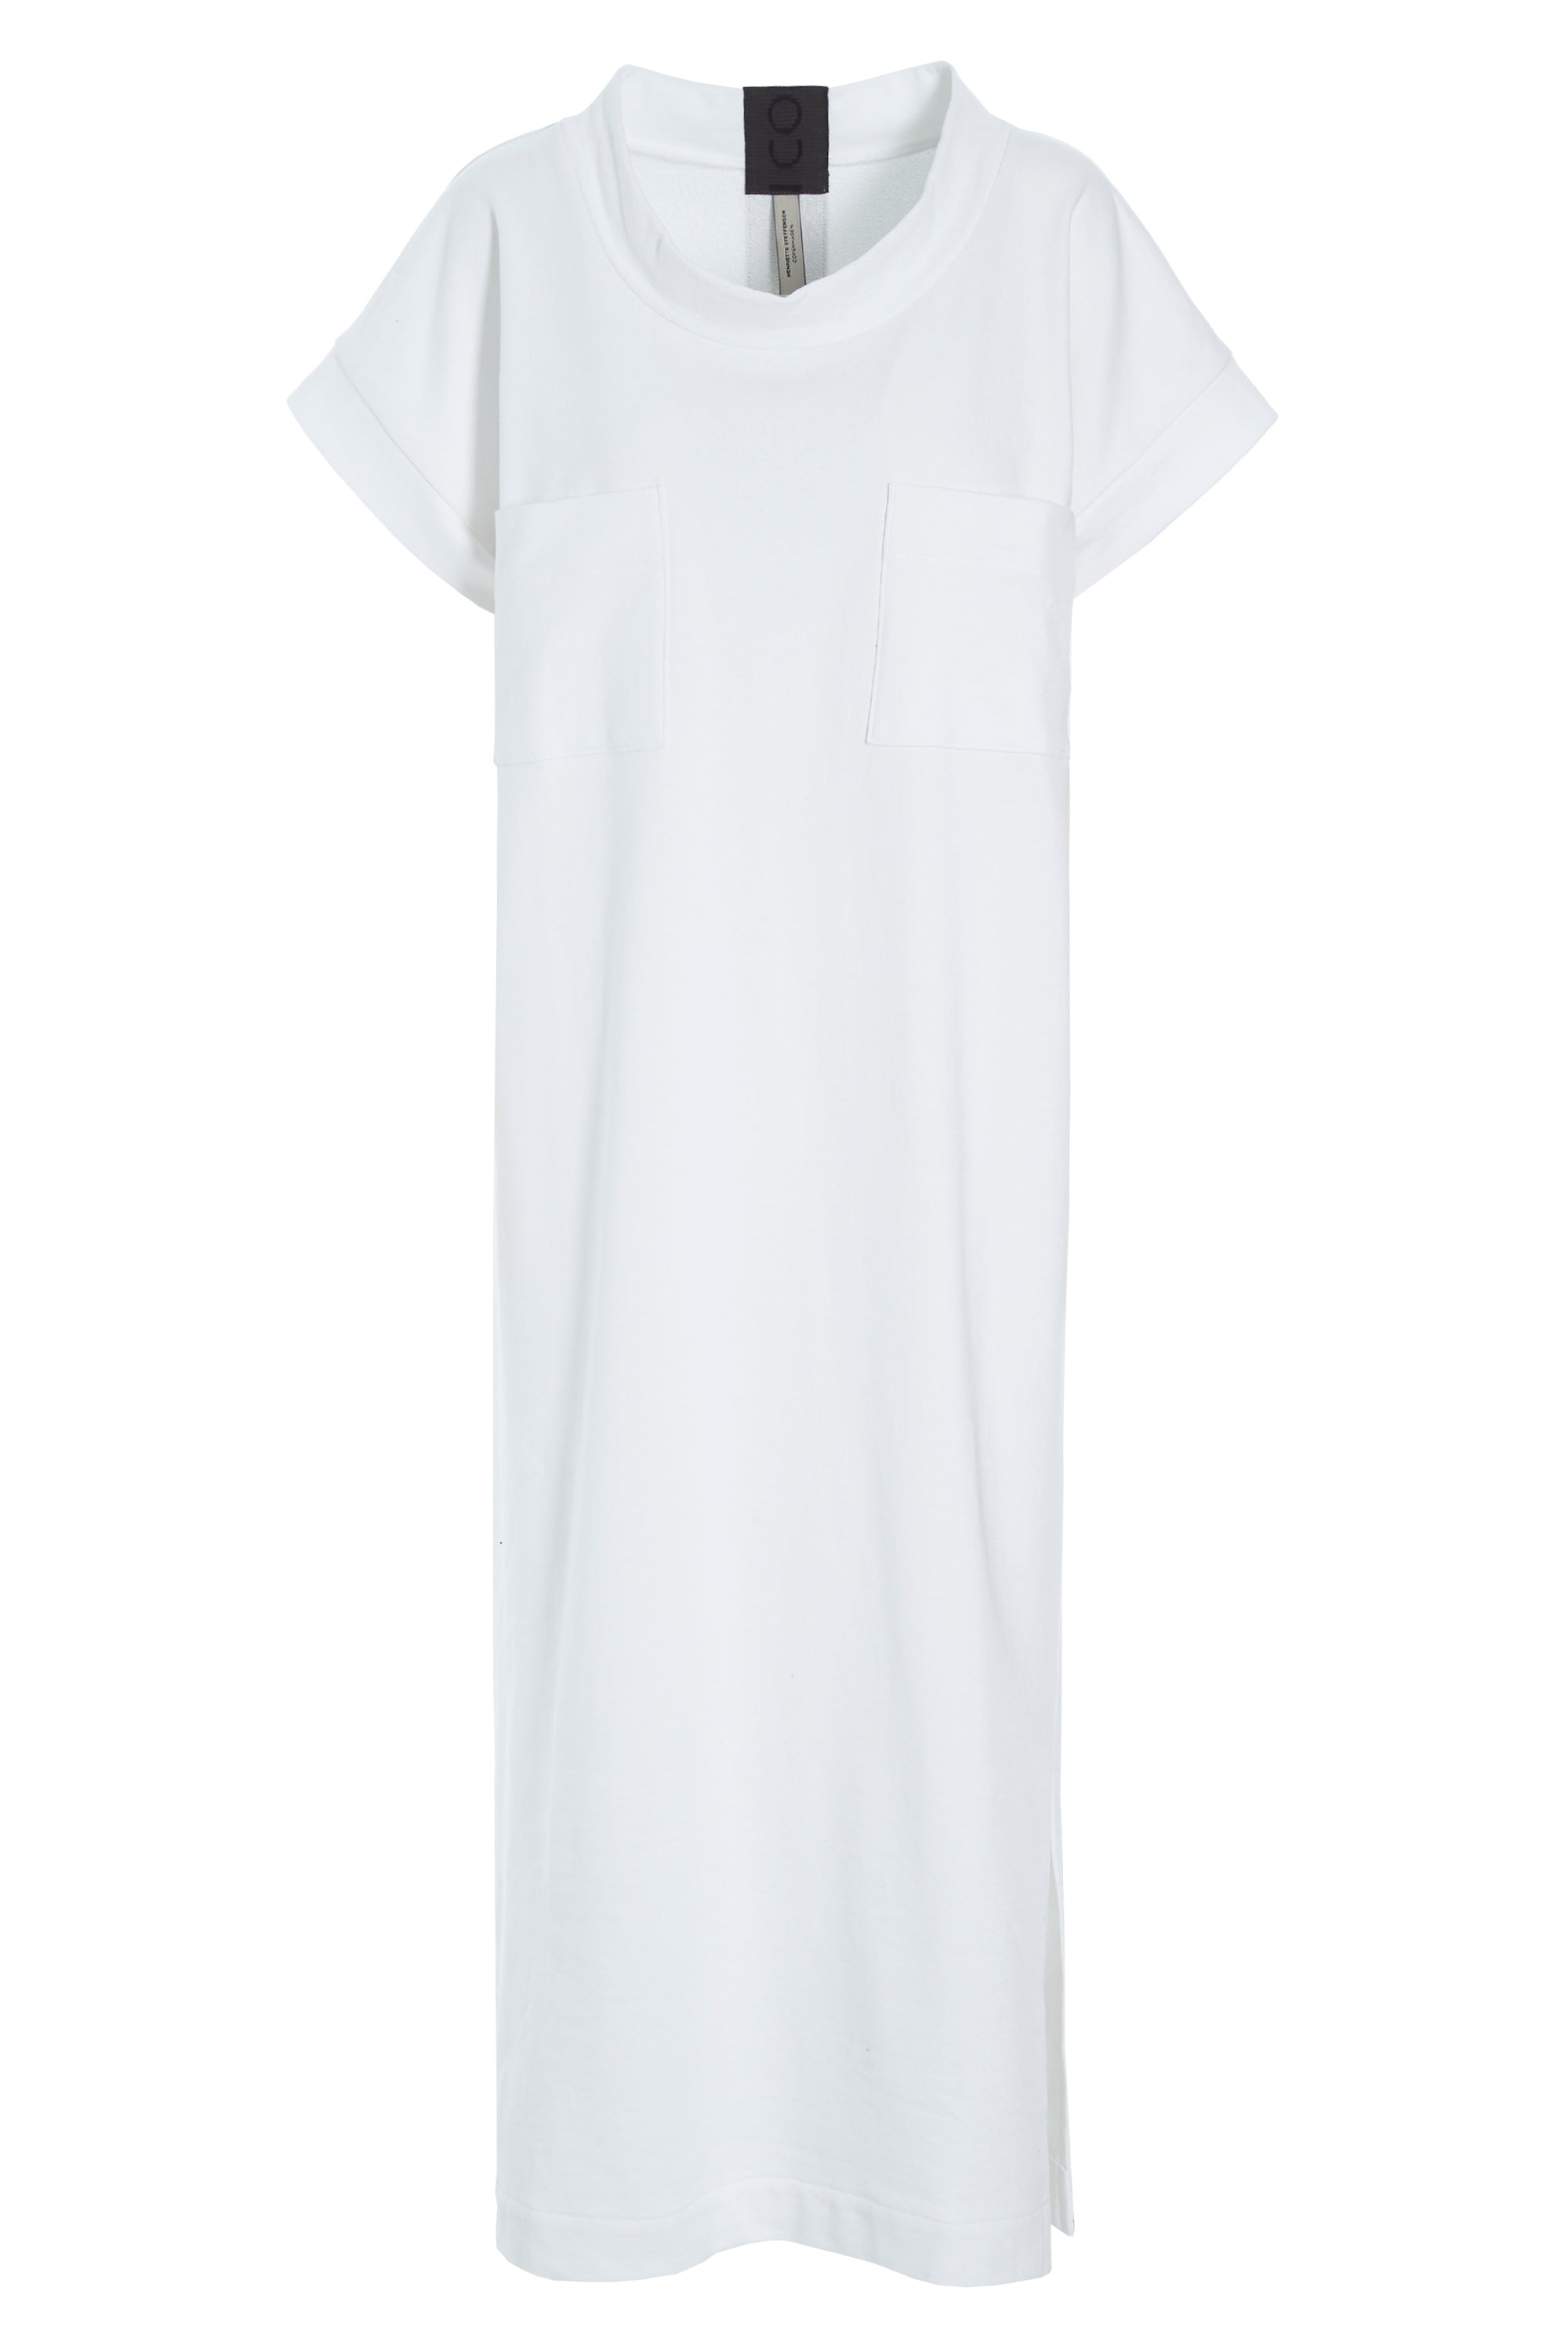 HENRIETTE STEFFENSEN COPENHAGEN LANGES KLEID - 73402 DRESS cotton WHITE 816